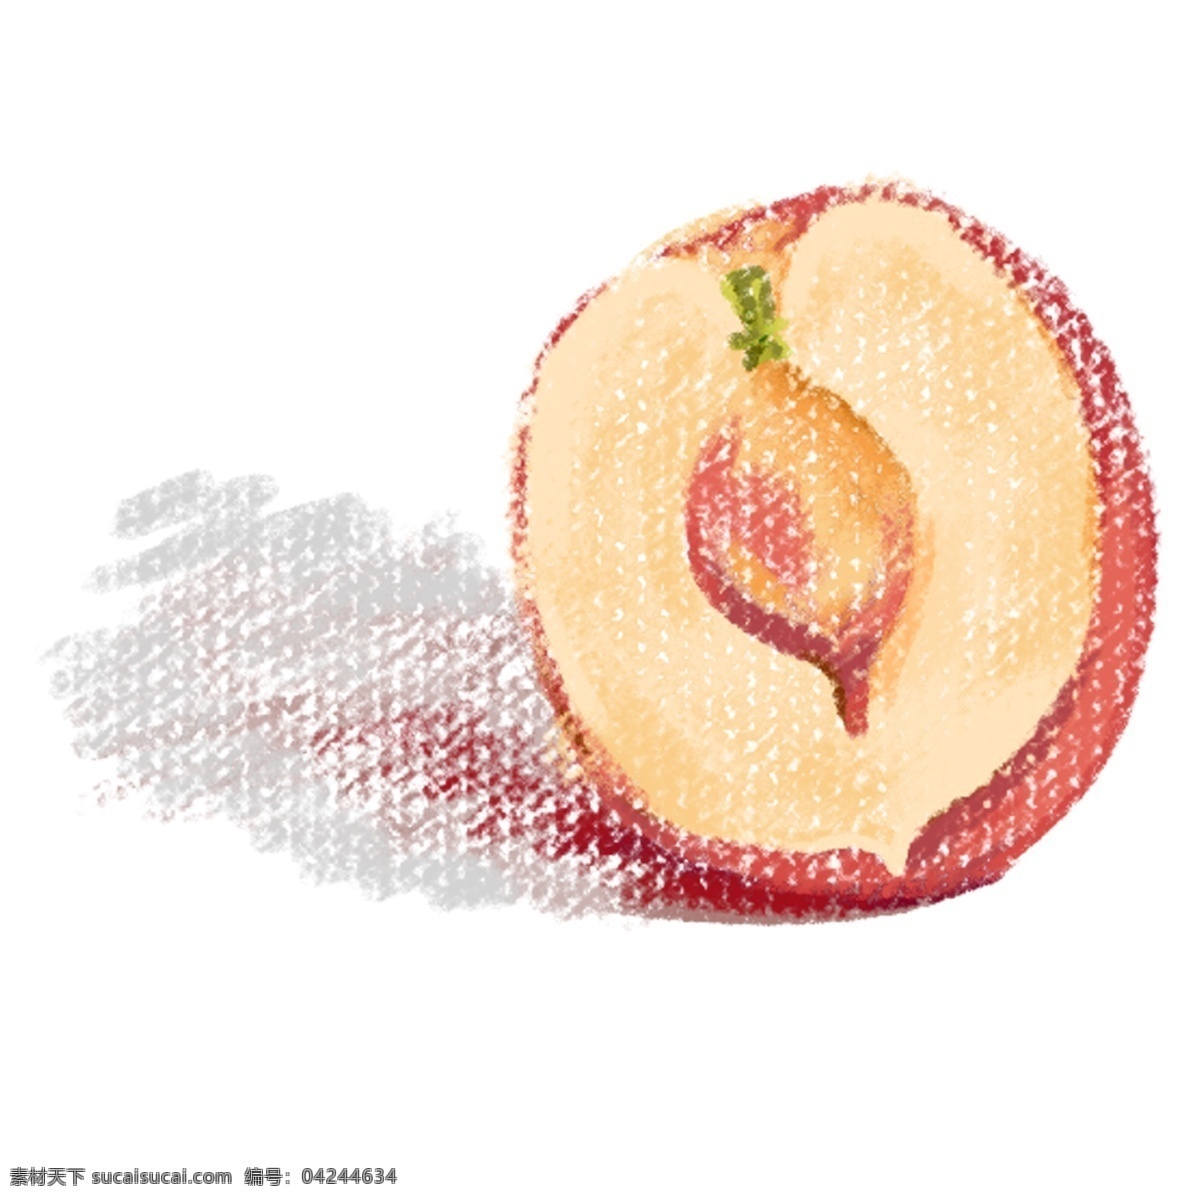 切开 一半 桃子 免 抠 图 红桃子切开 夏天的水果 红色桃子水果 卡通桃子水果 水果 好吃 免抠图下载